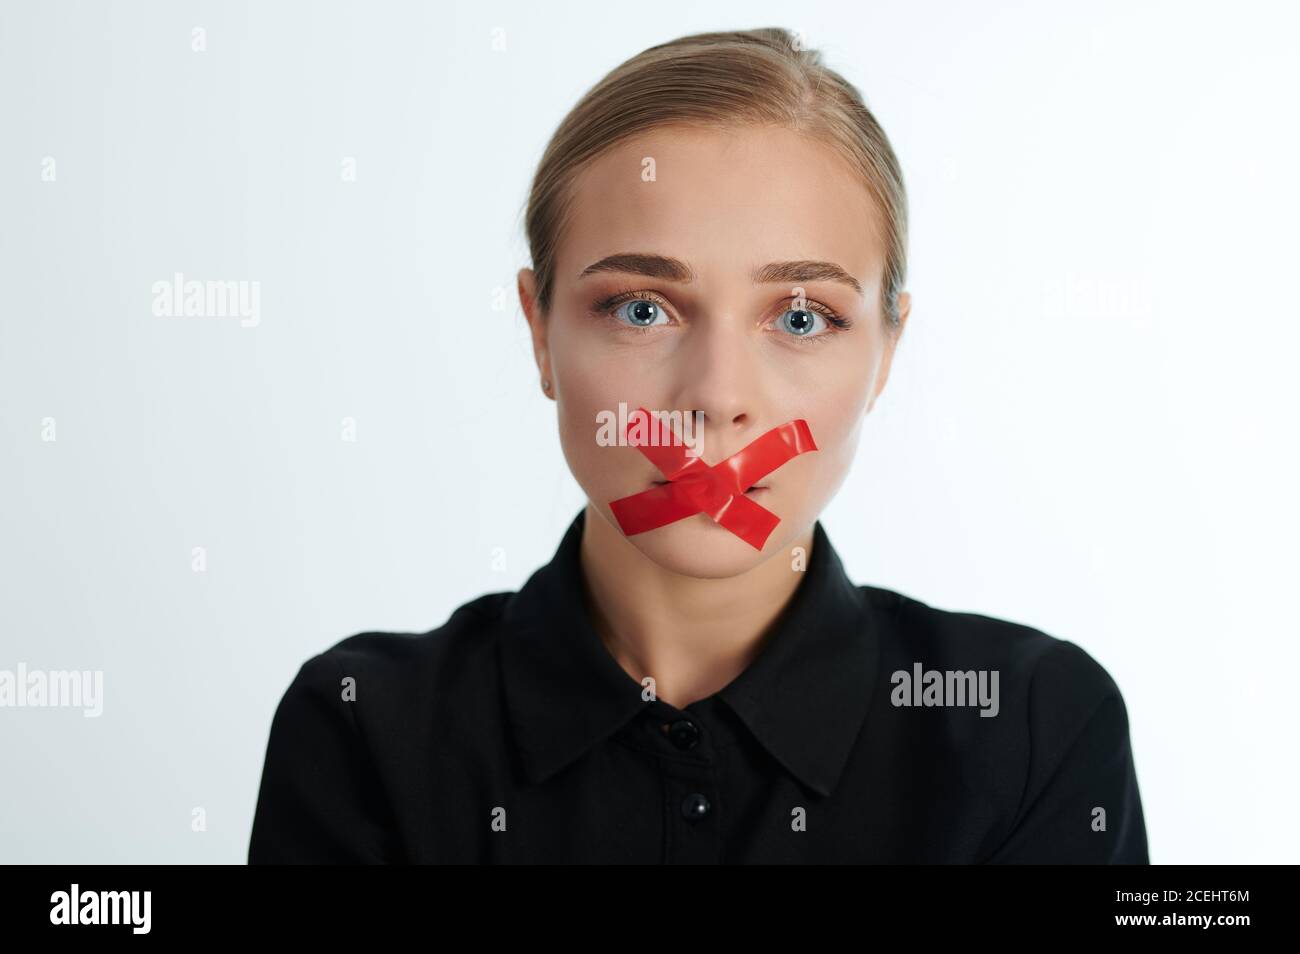 Portrait de la femme pleurant avec une bouche fermée sur fond blanc de studio Banque D'Images